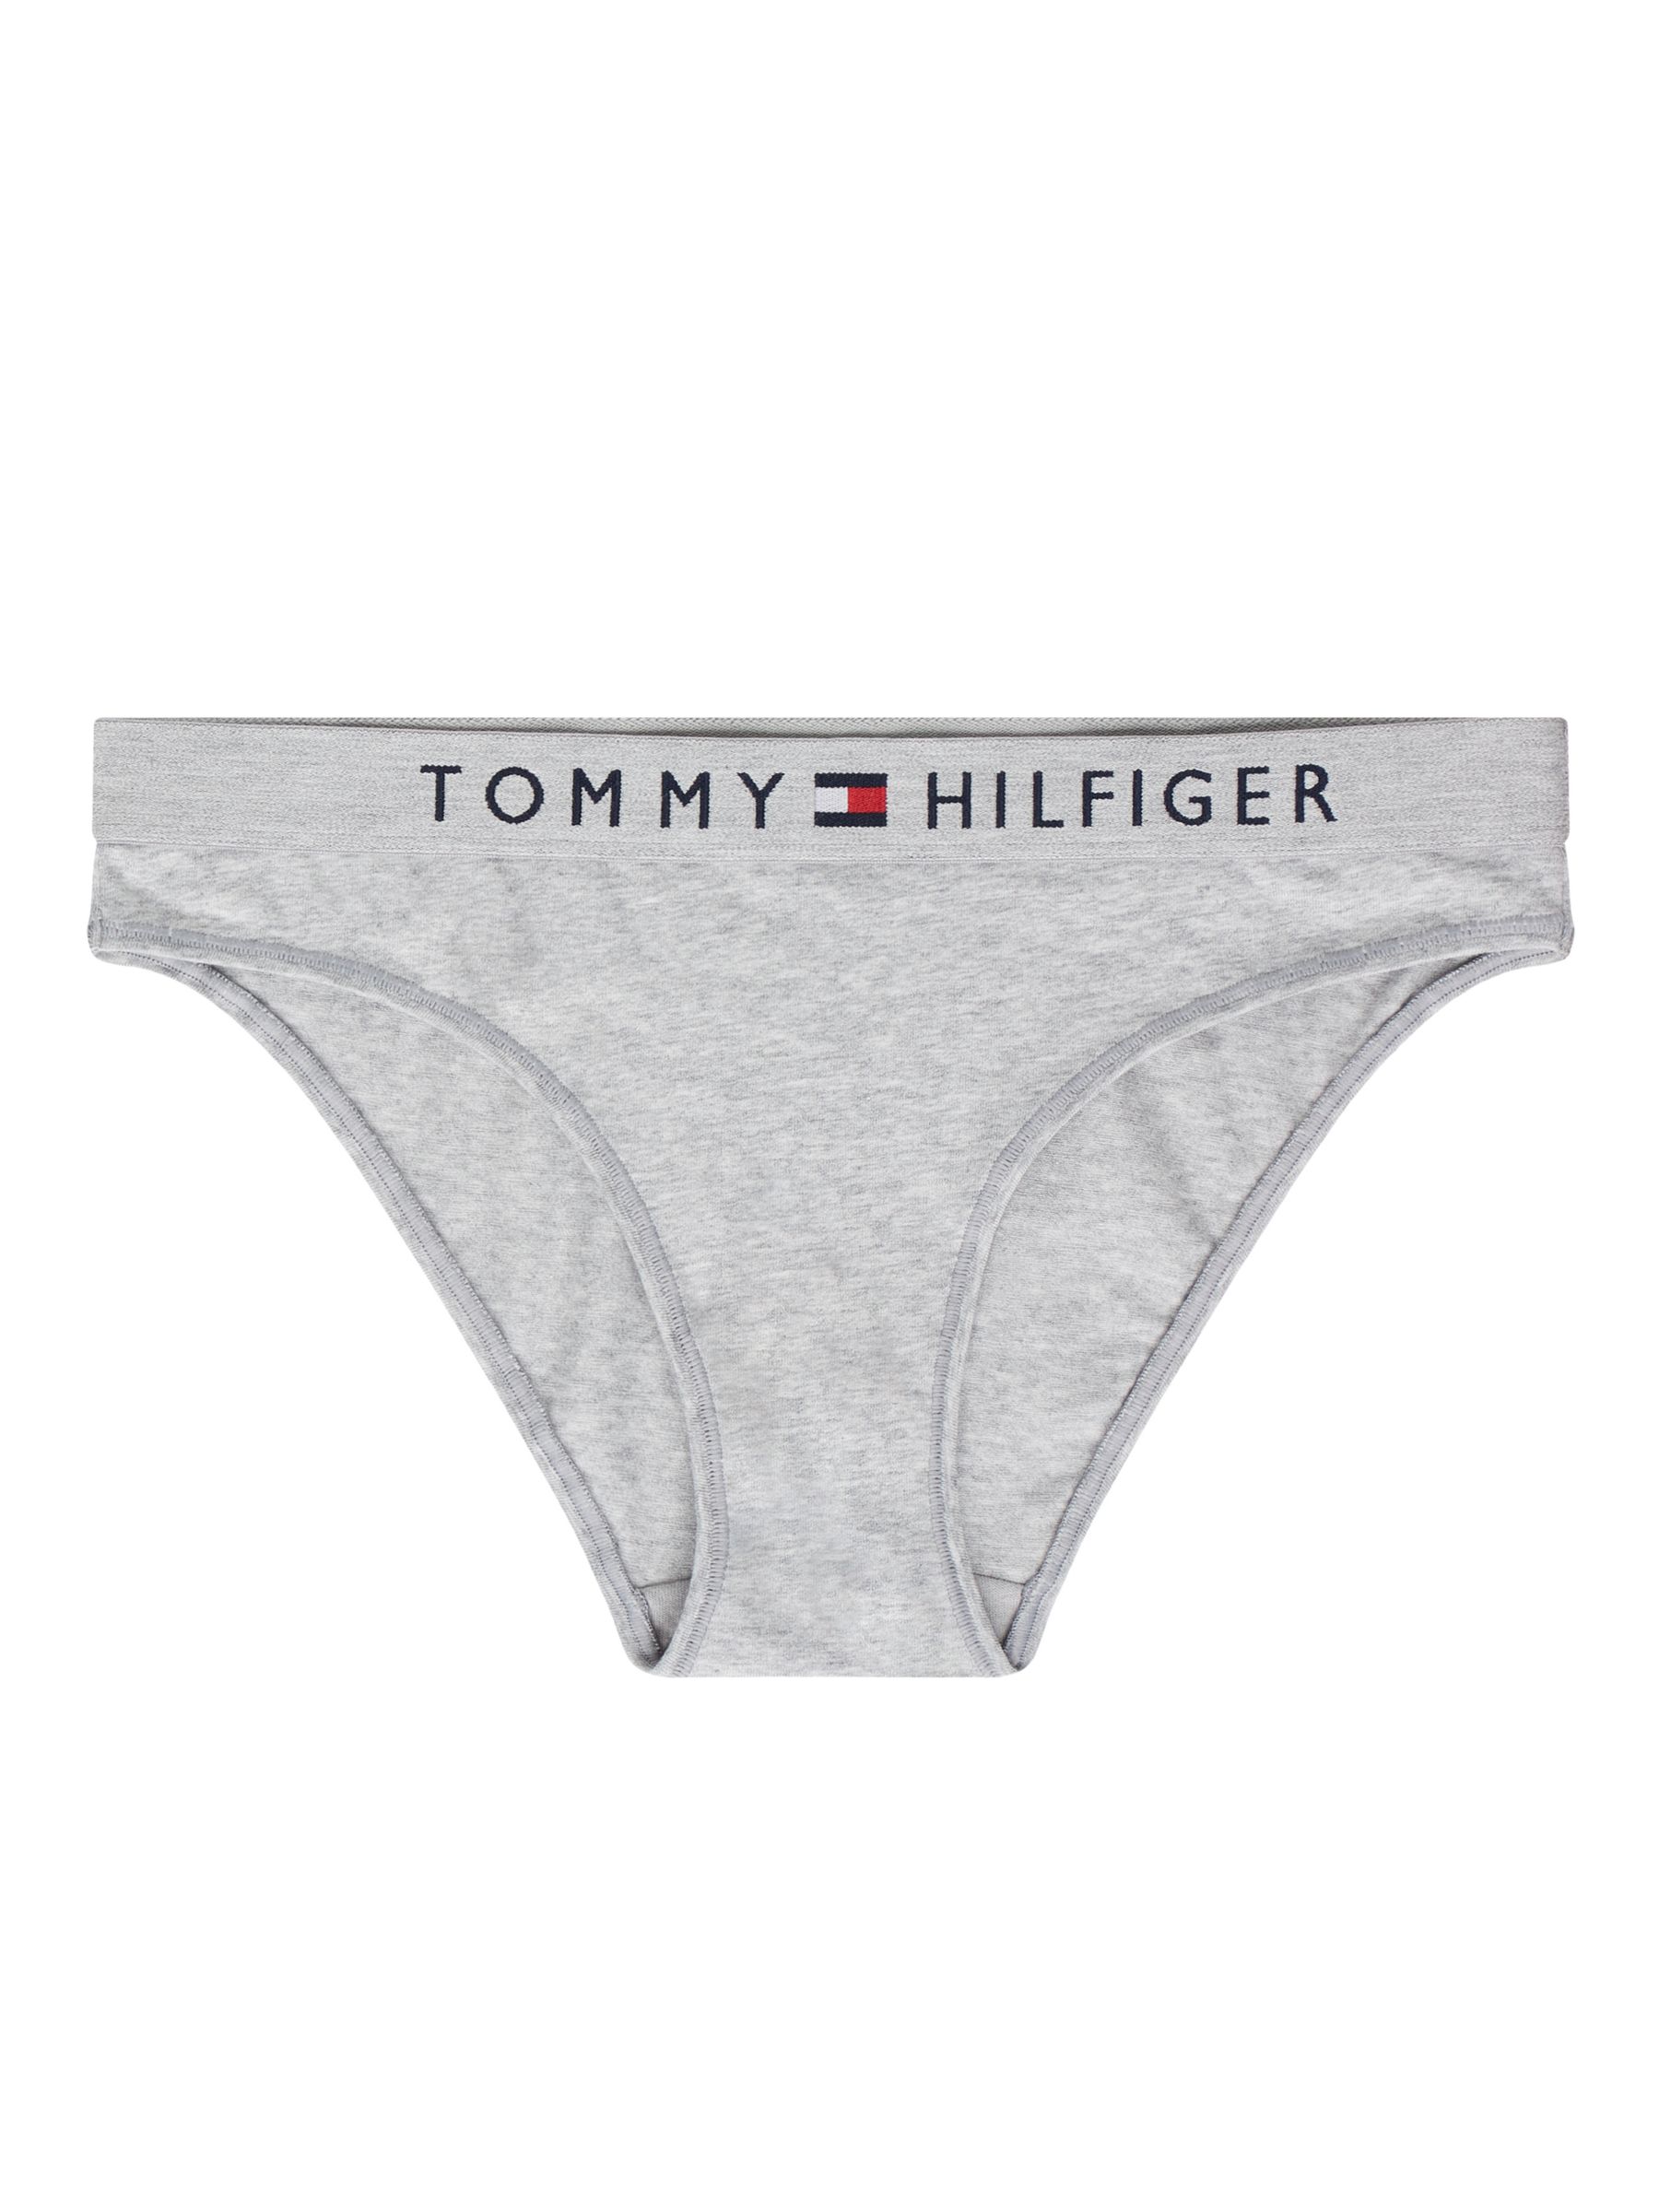 gårdsplads kabel Irreplaceable Tommy Hilfiger Logo Waistband Stretch Cotton Bikini Knickers, Grey Heather,  XS